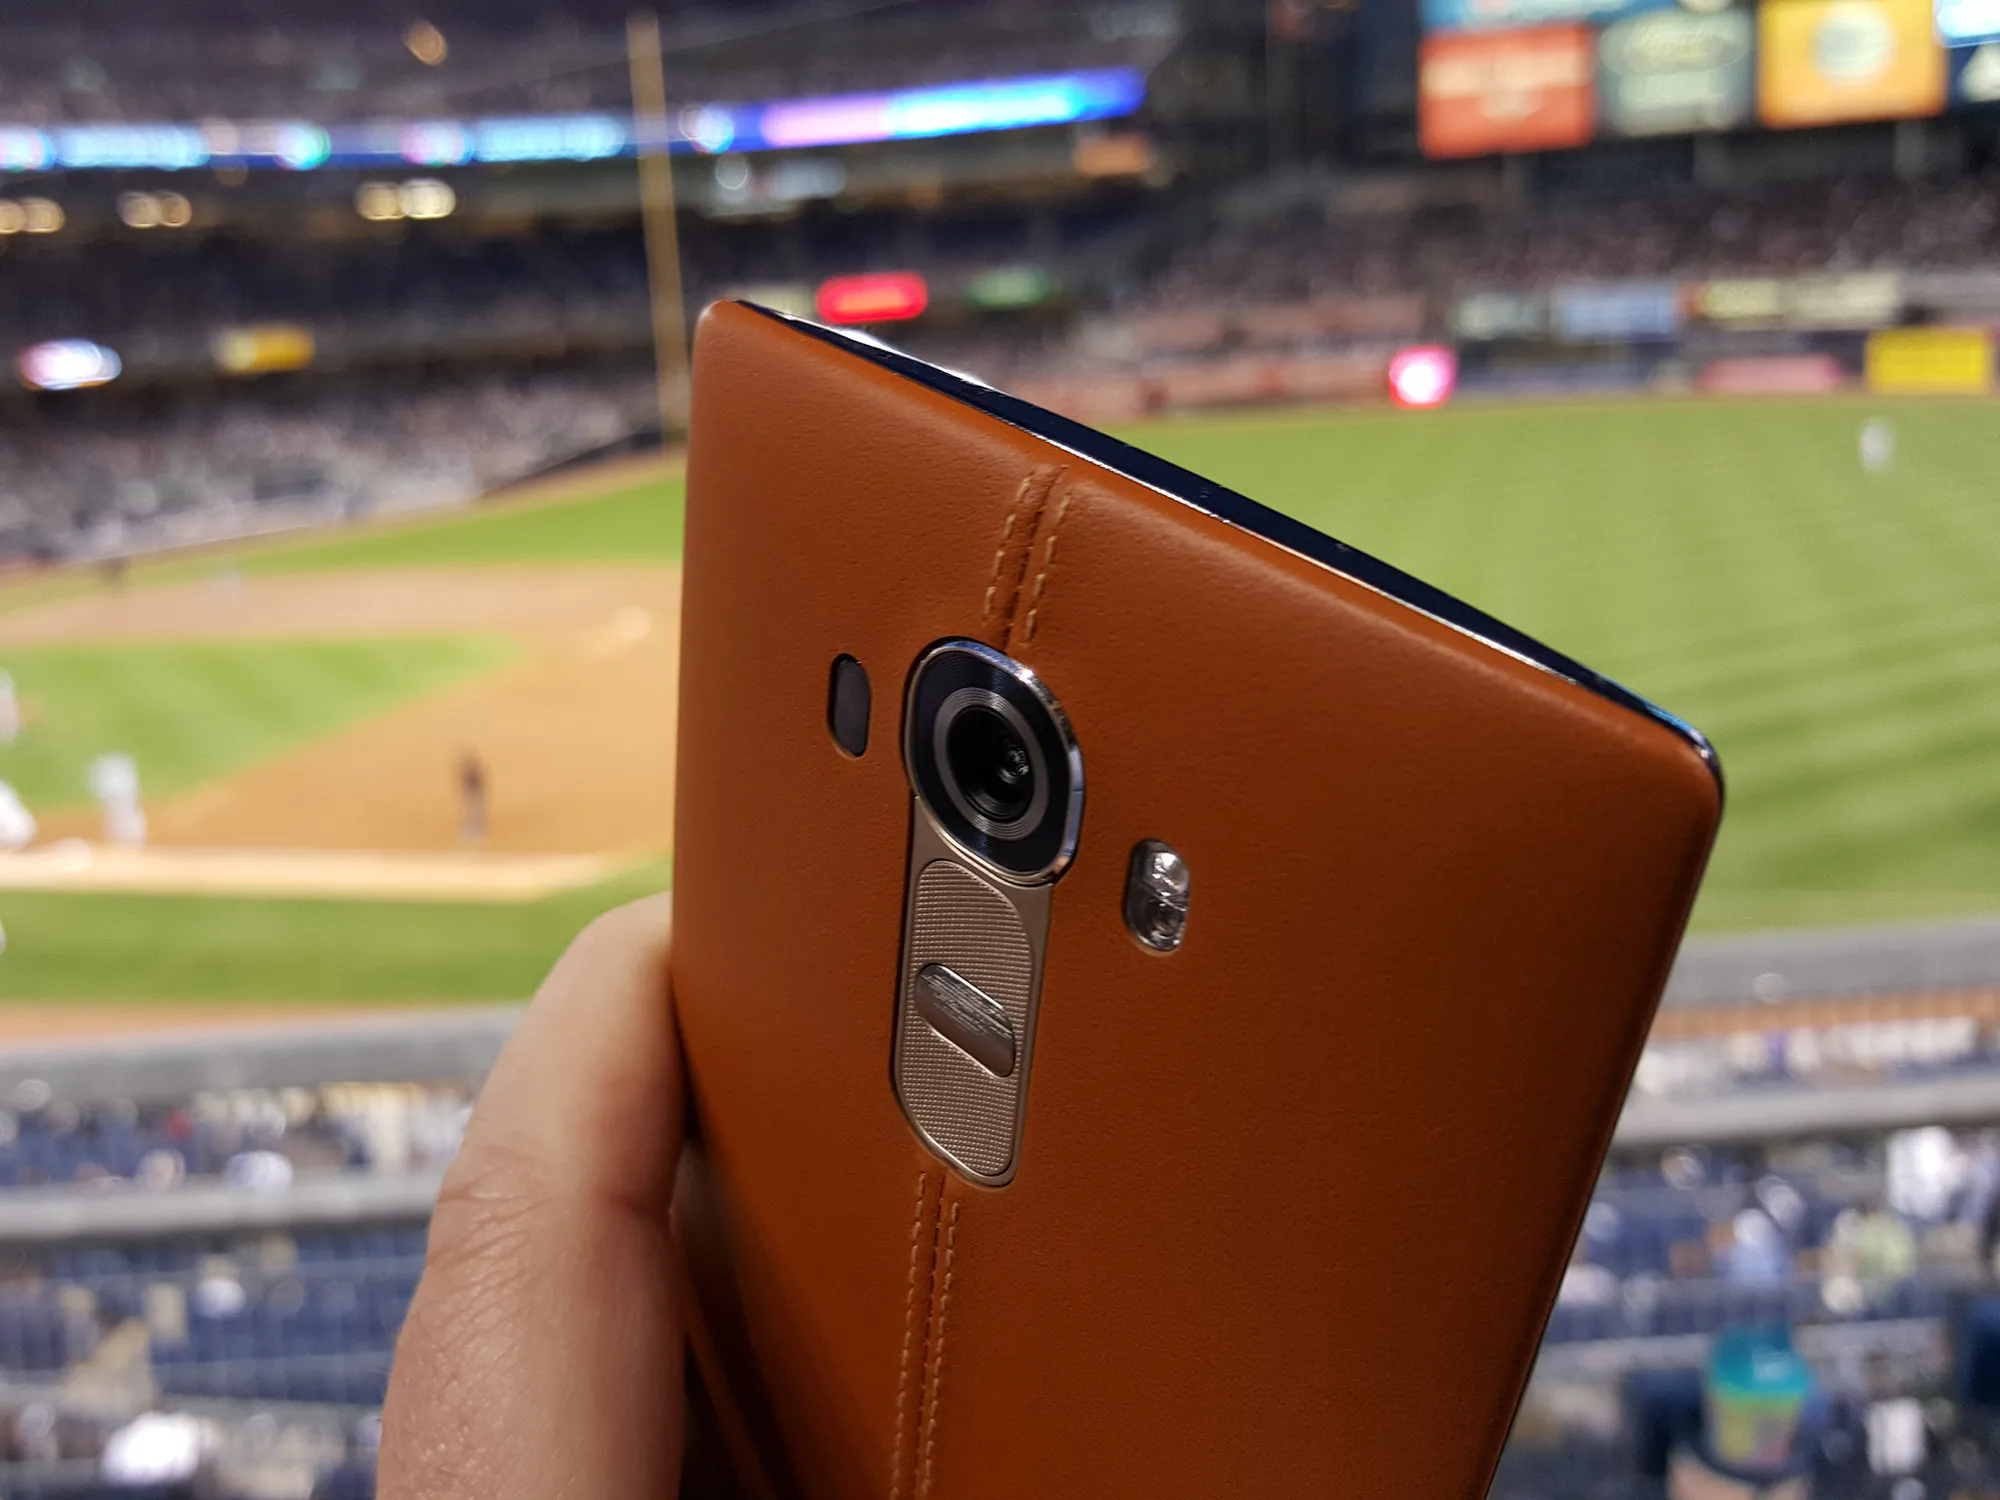 LG G4 с кожаной задней крышкой, в стадионе Янки, в 2015 году.